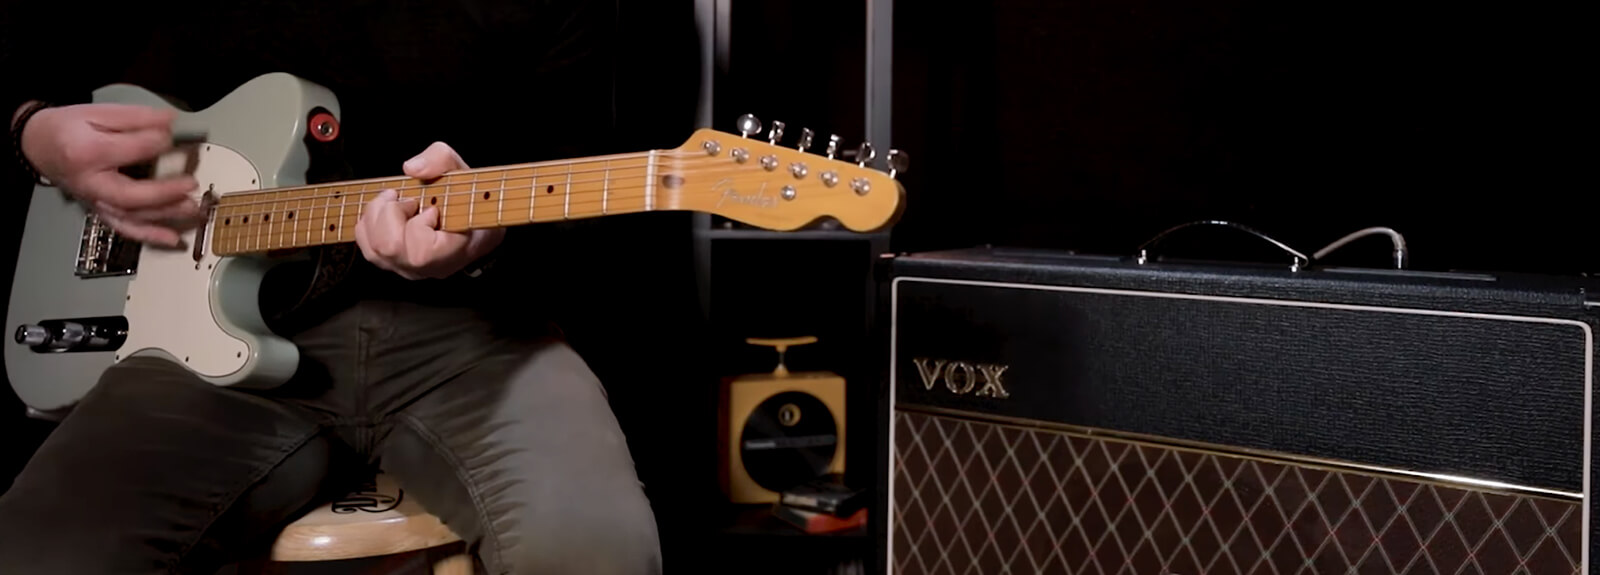 Fender Mini Deluxe Ampli Guitare Electrique, Ampli Maroc